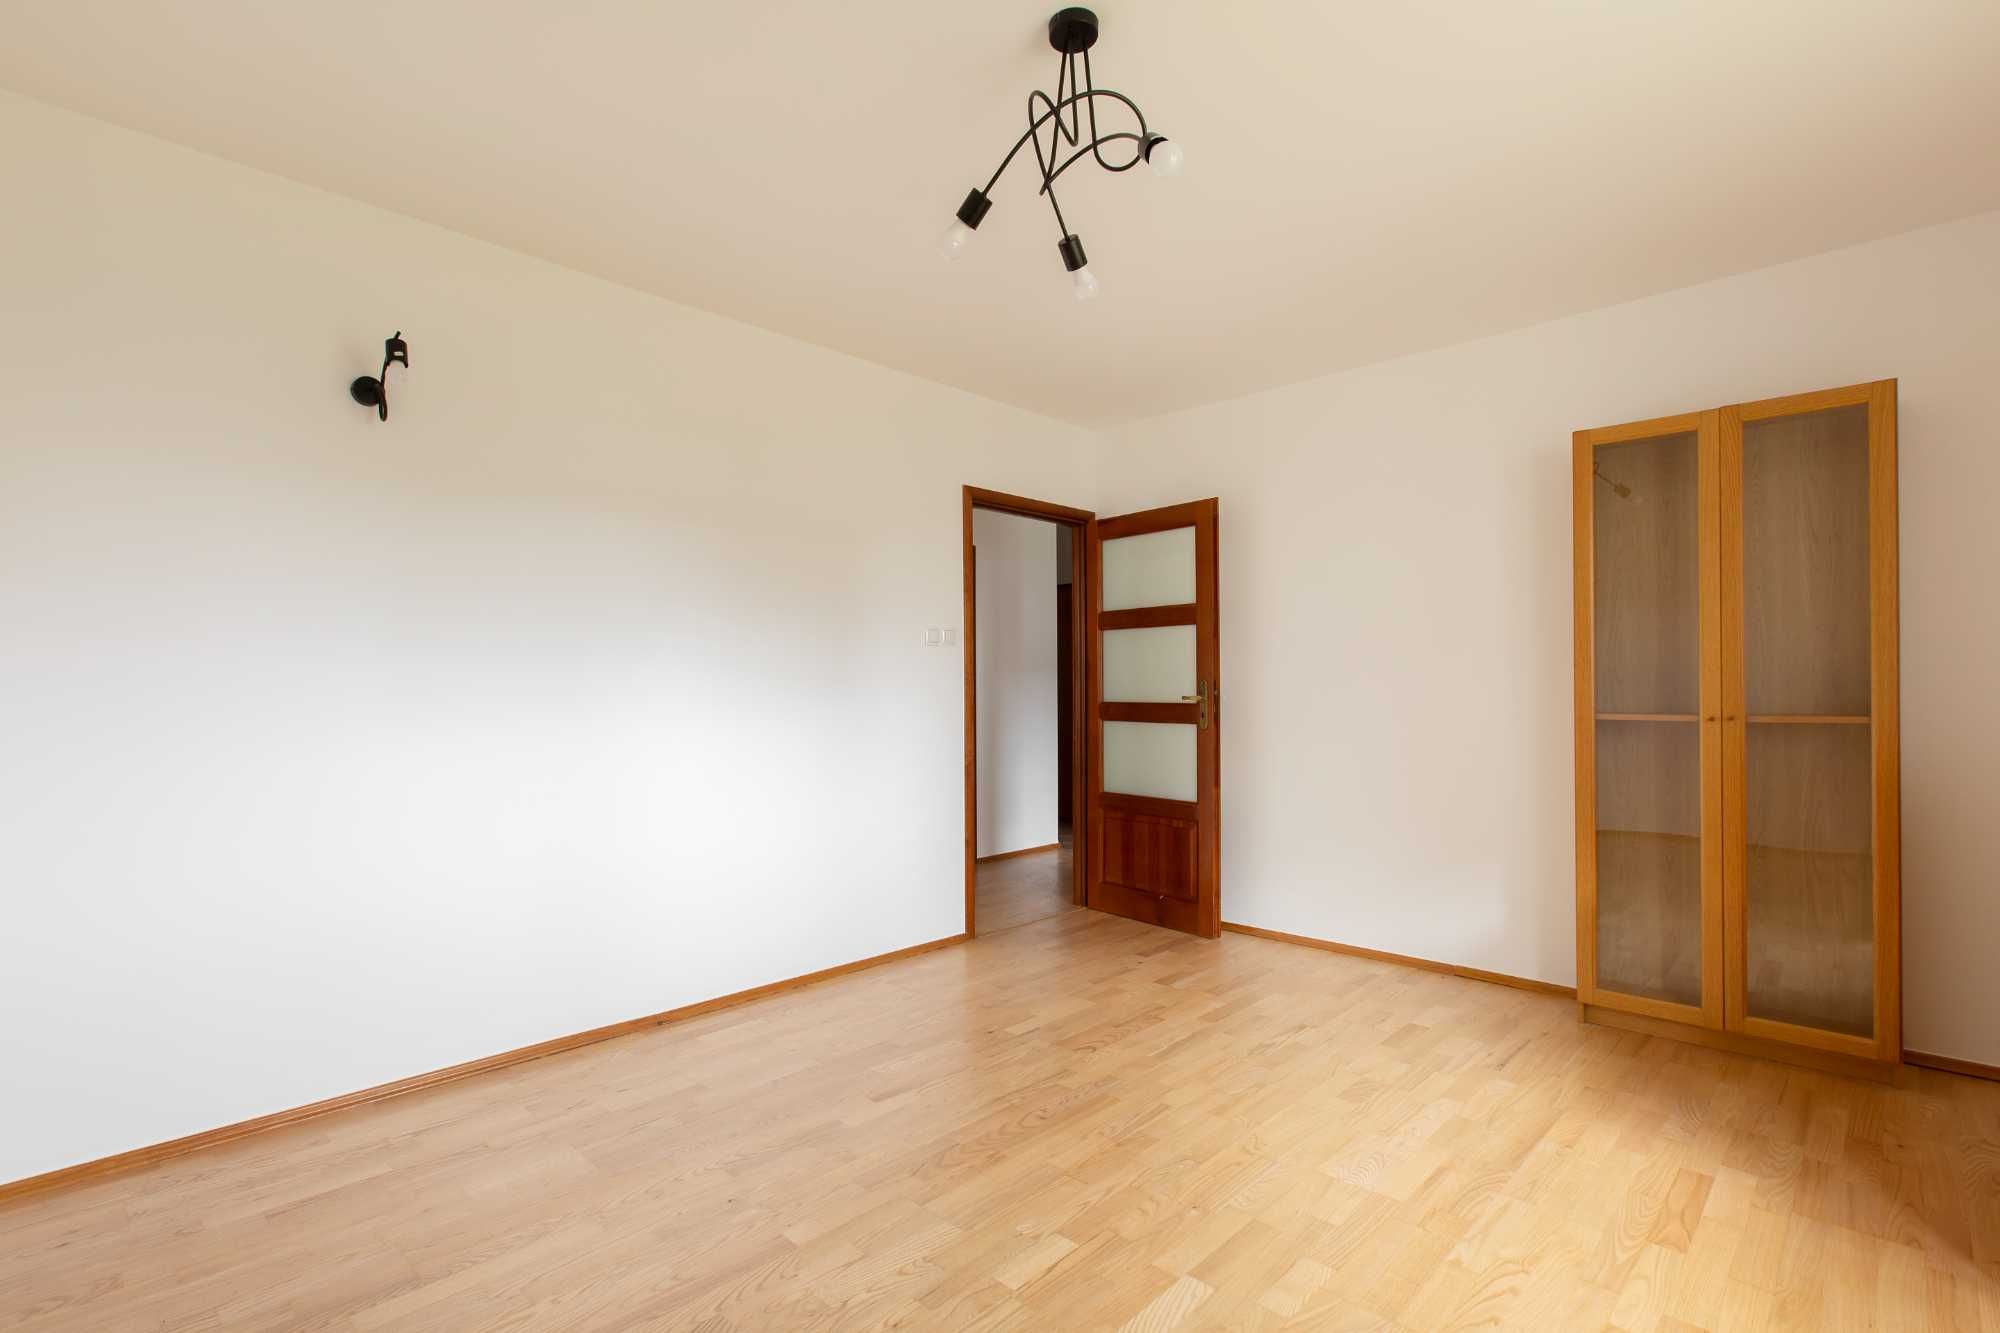 Do wynajęcia mieszkanie - Piecki Migowo 50m2, 2 pokoje, bezpośrednio.